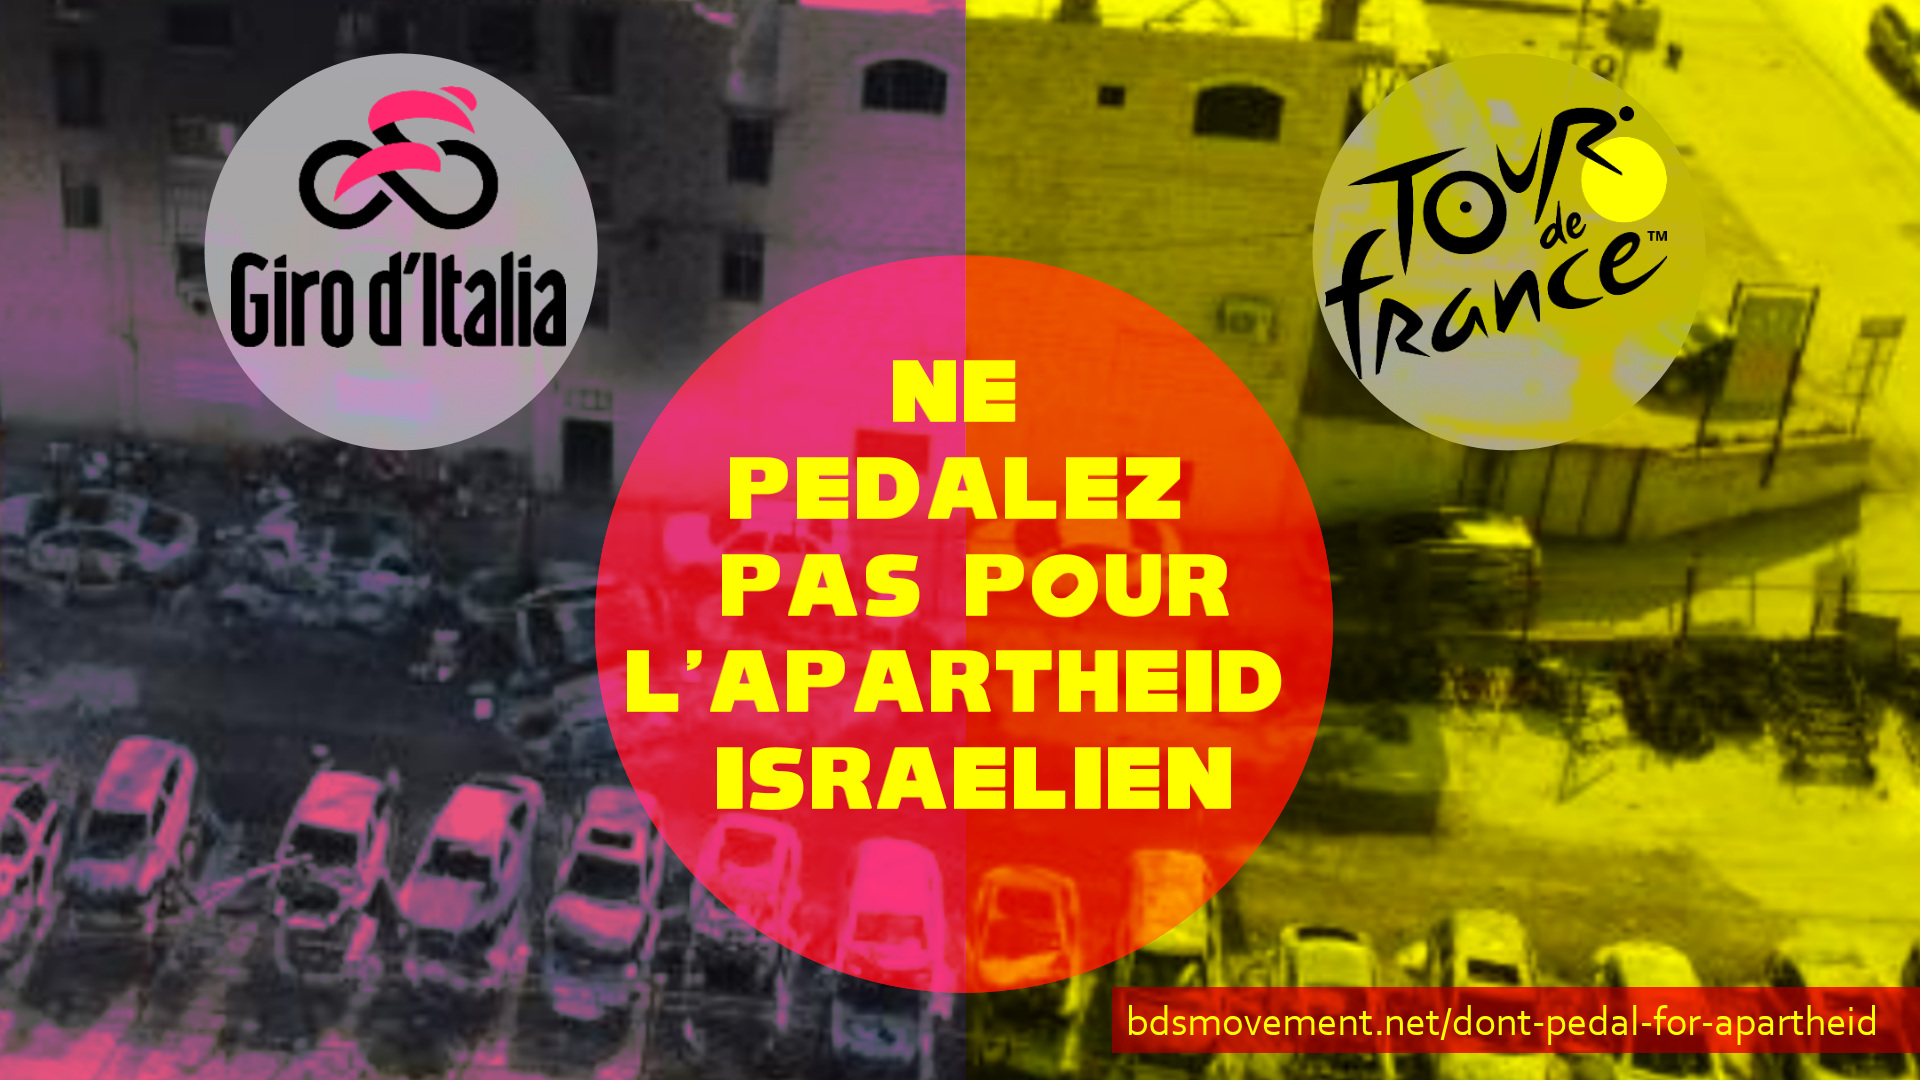 Giro d’Italia et Tour de France, ne pédalez pas pour l’apartheid israélien